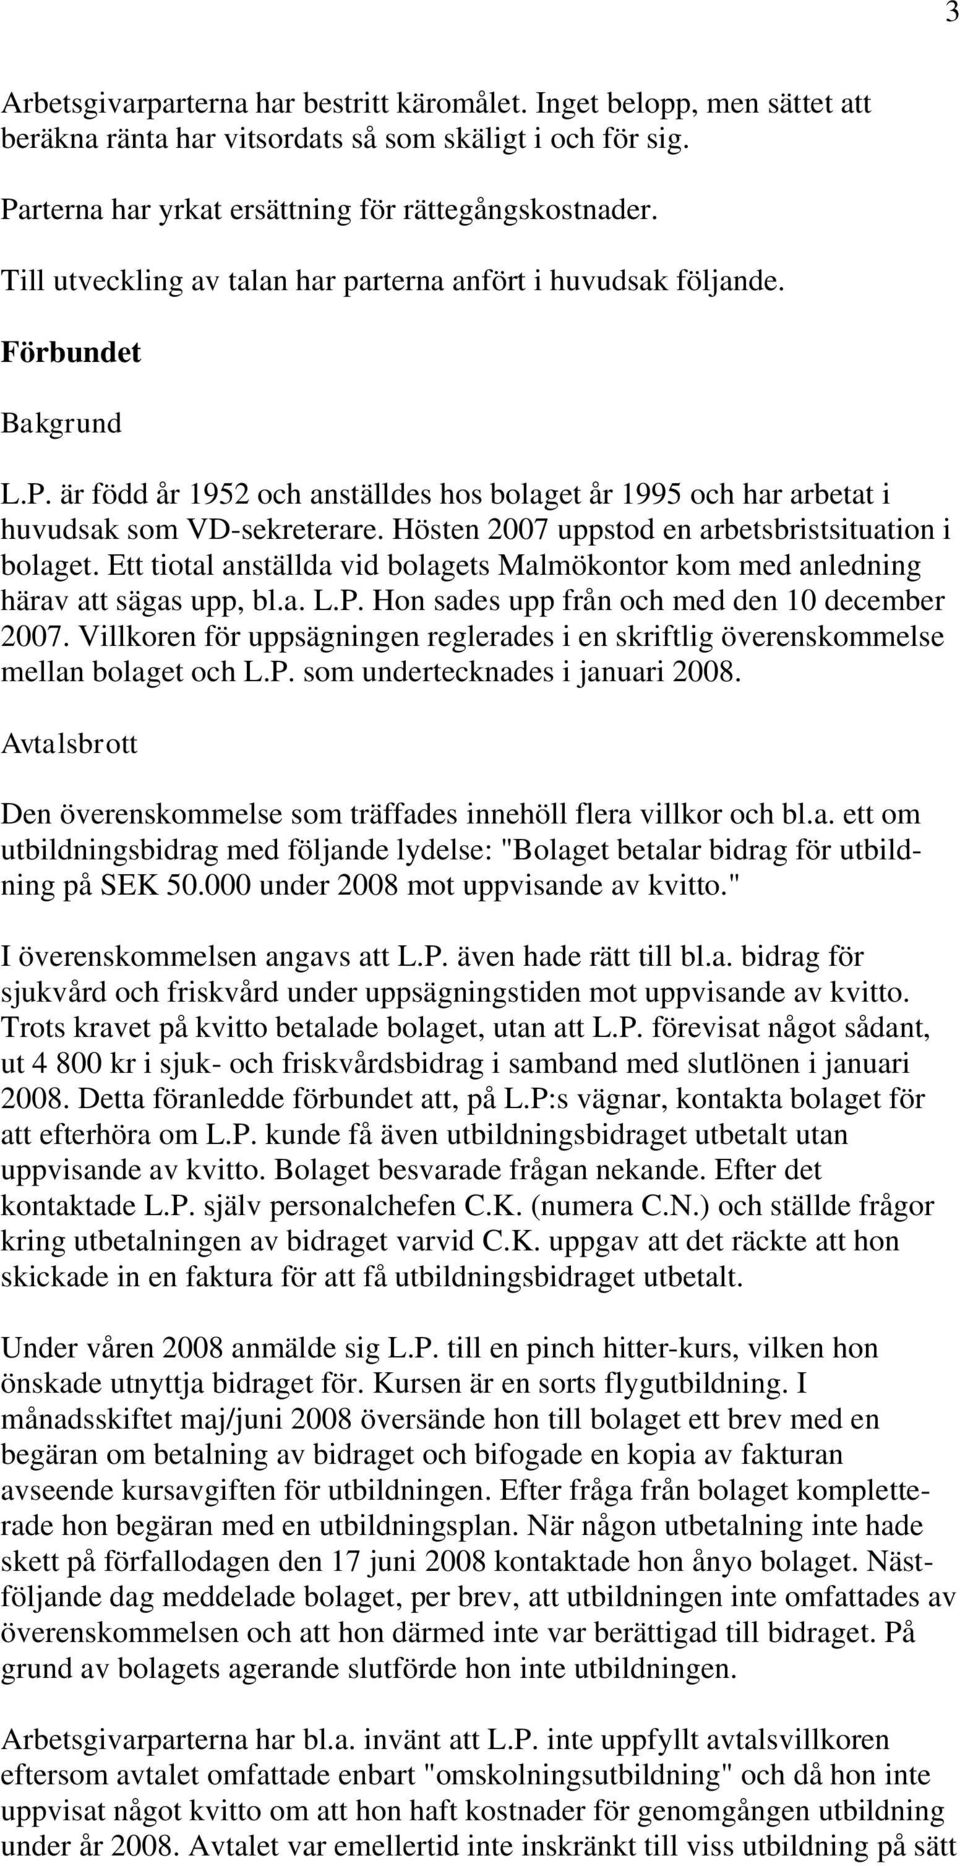 Hösten 2007 uppstod en arbetsbristsituation i bolaget. Ett tiotal anställda vid bolagets Malmökontor kom med anledning härav att sägas upp, bl.a. L.P. Hon sades upp från och med den 10 december 2007.